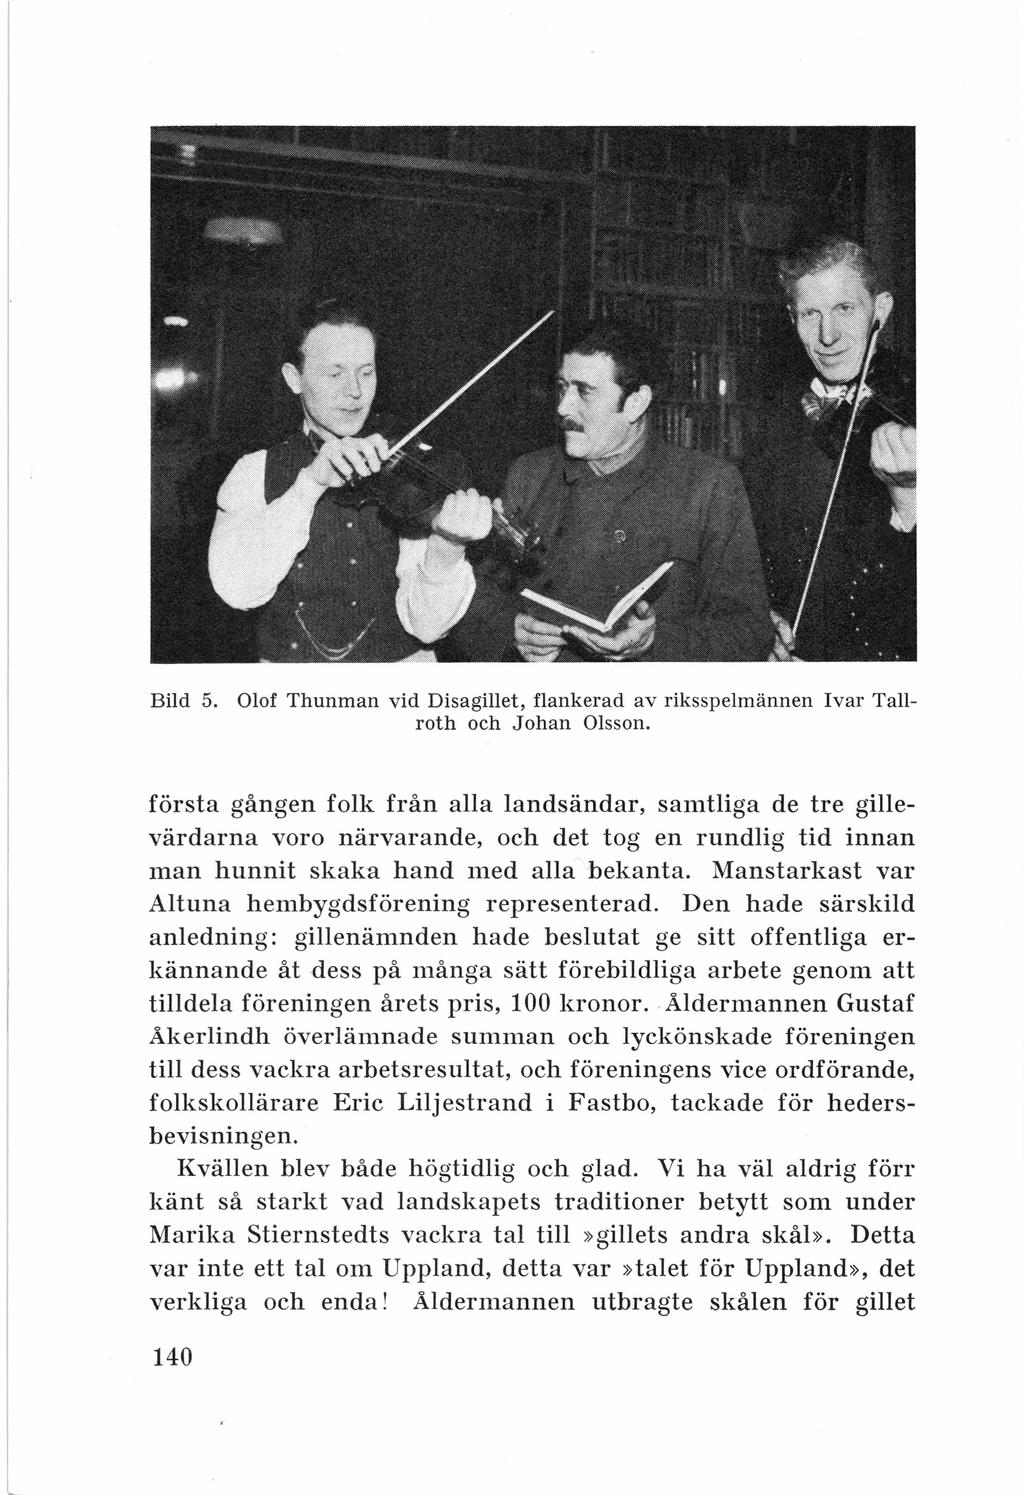 Bild 5. Olof Thunman vid Disagillet, flankerad av riksspelmännen Ivar Tallroth och Johan Olsson.